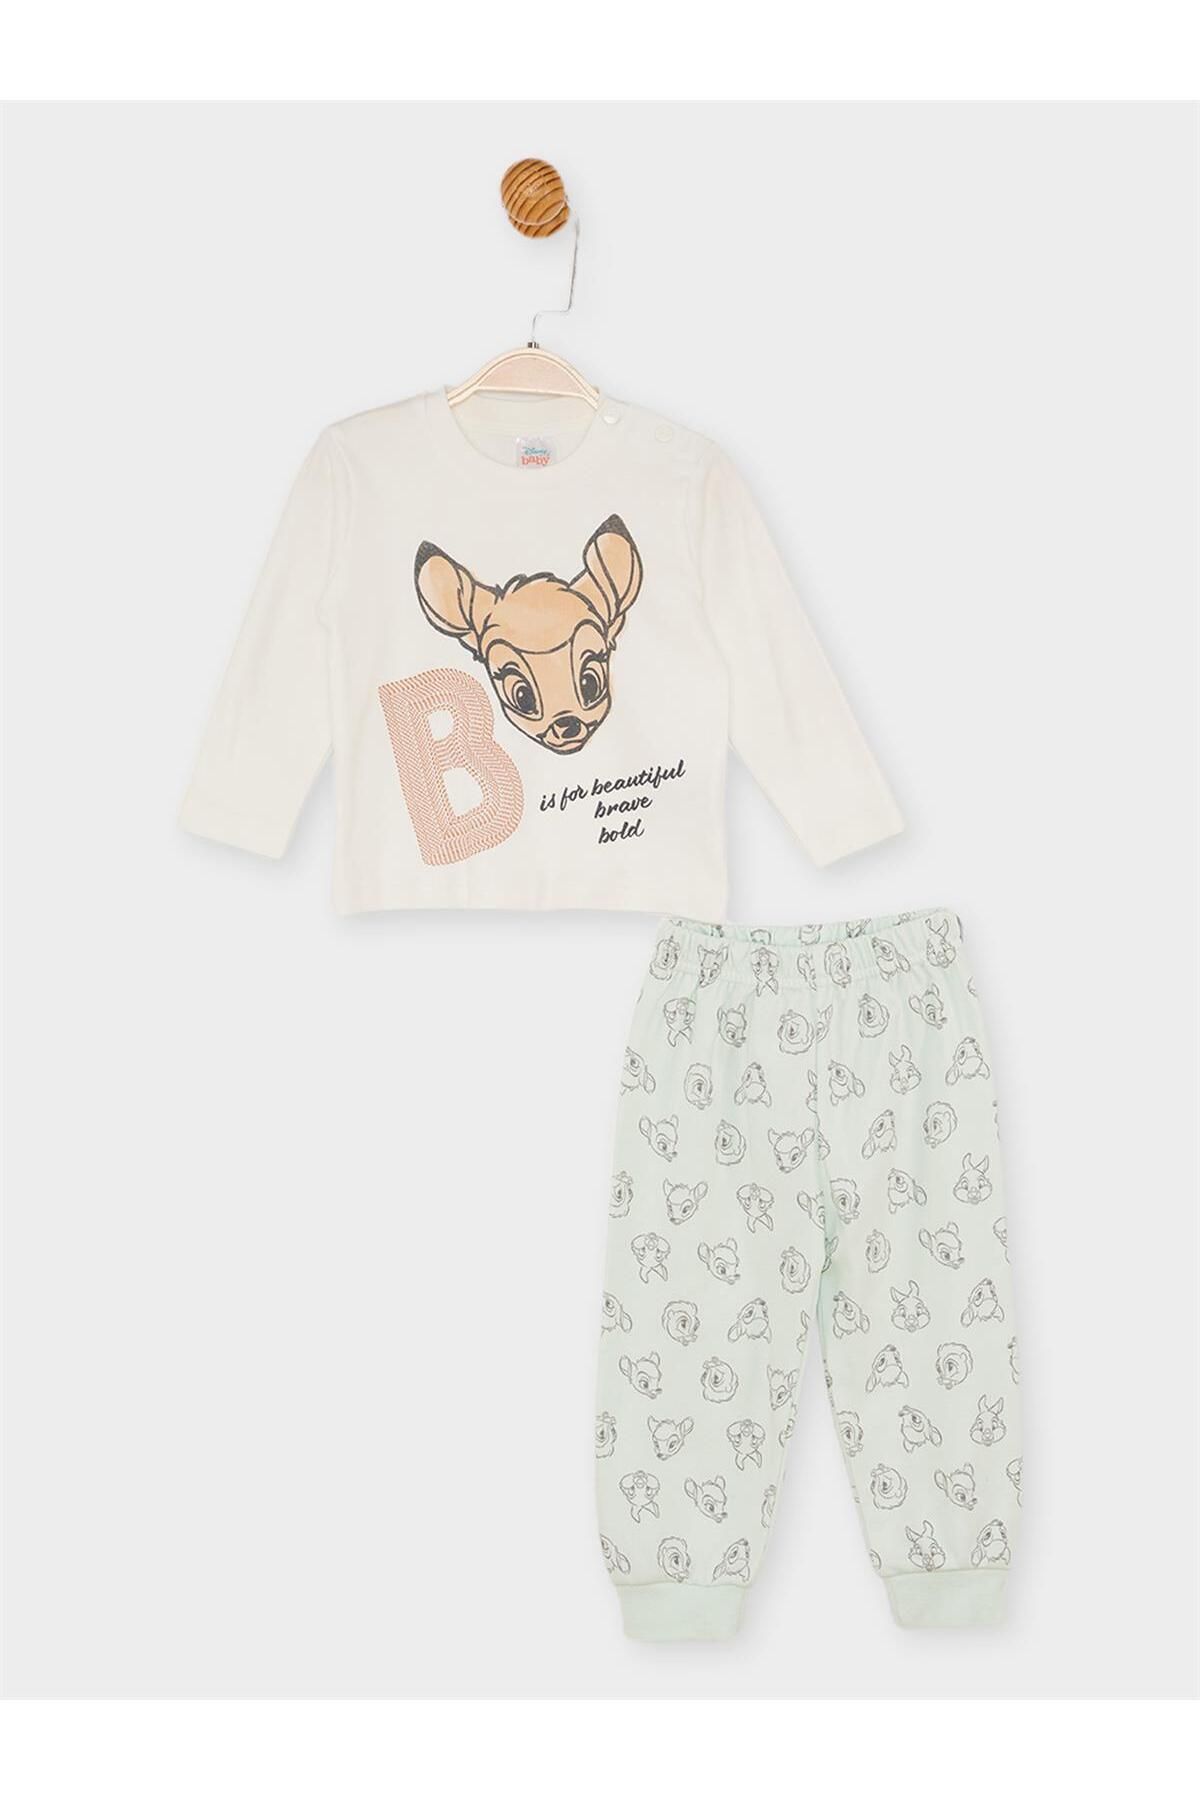 DİSNEY Bambi Lisanslı Kız Bebek Pijama Takımı 21433